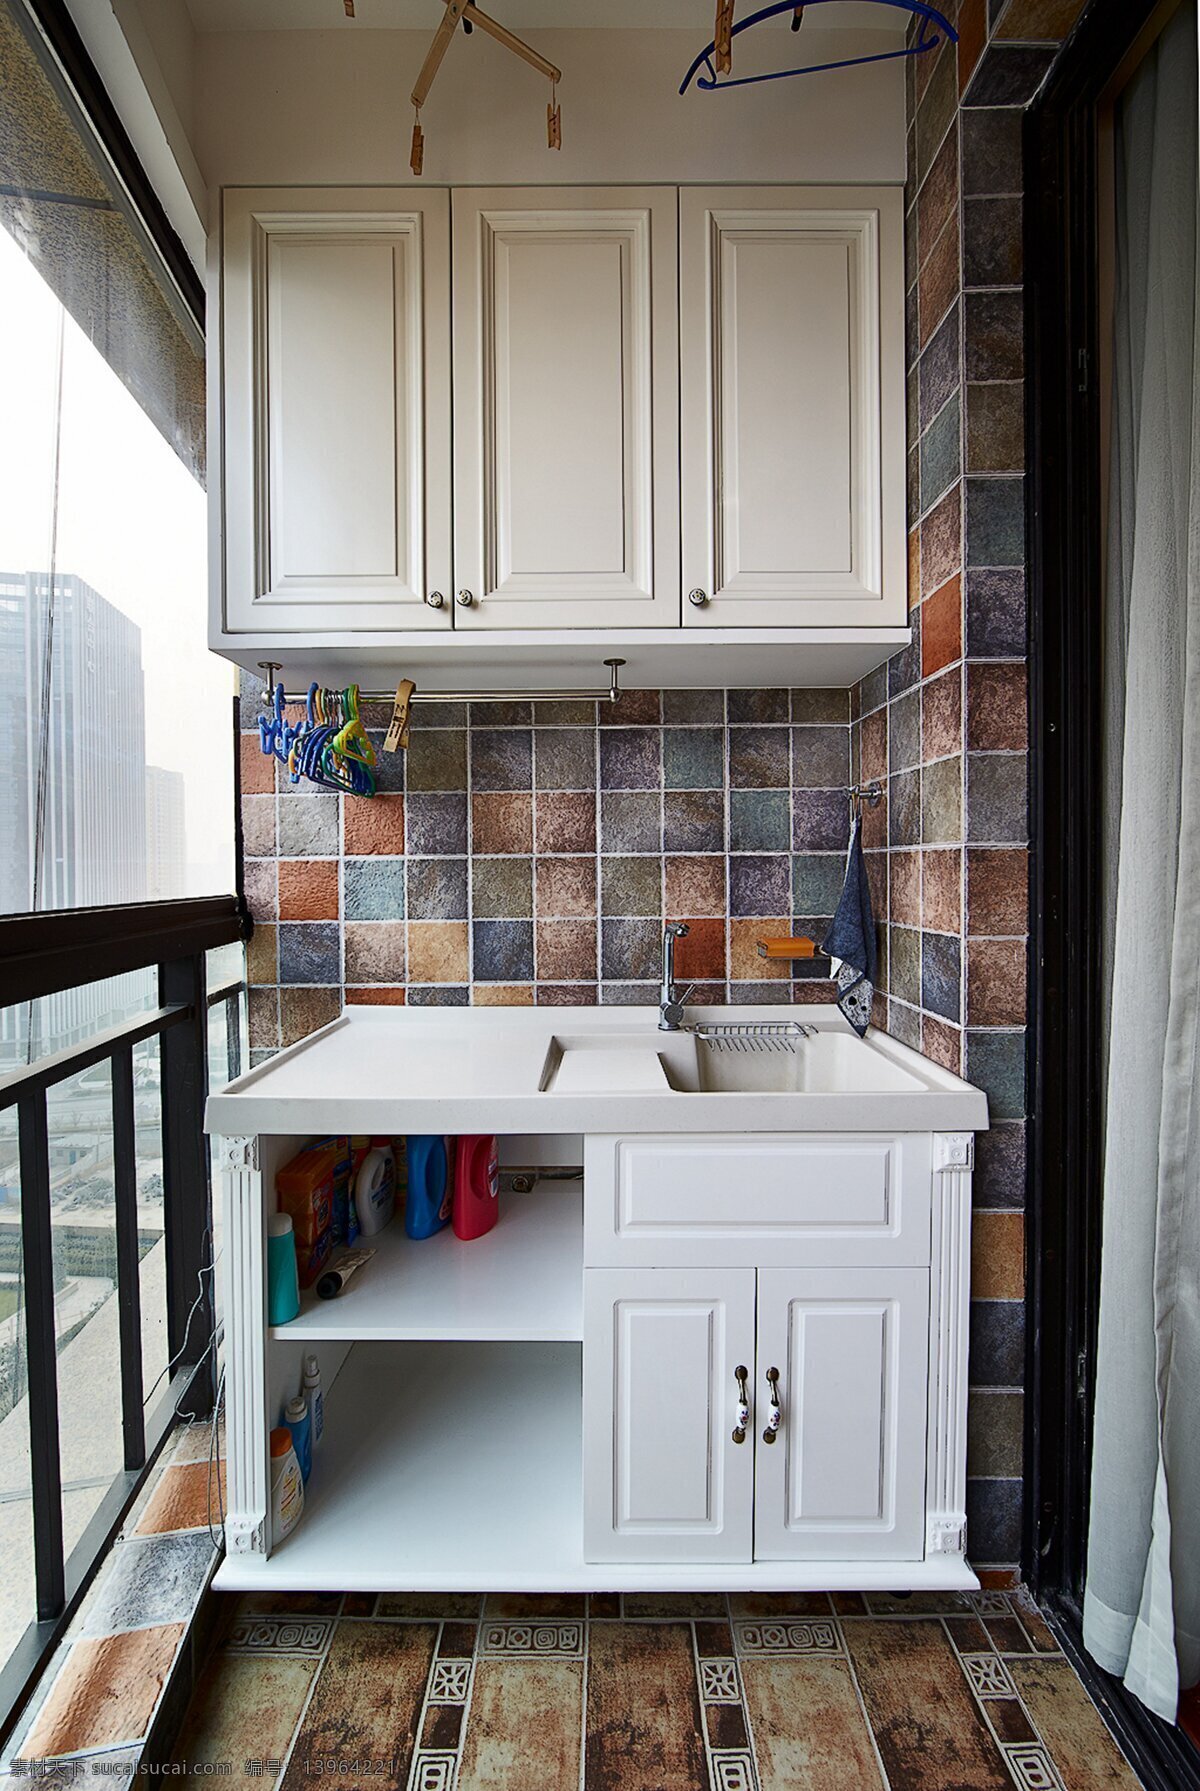 美式 简约 厨房 橱柜 设计图 家居 家居生活 室内设计 装修 室内 家具 装修设计 环境设计 效果图